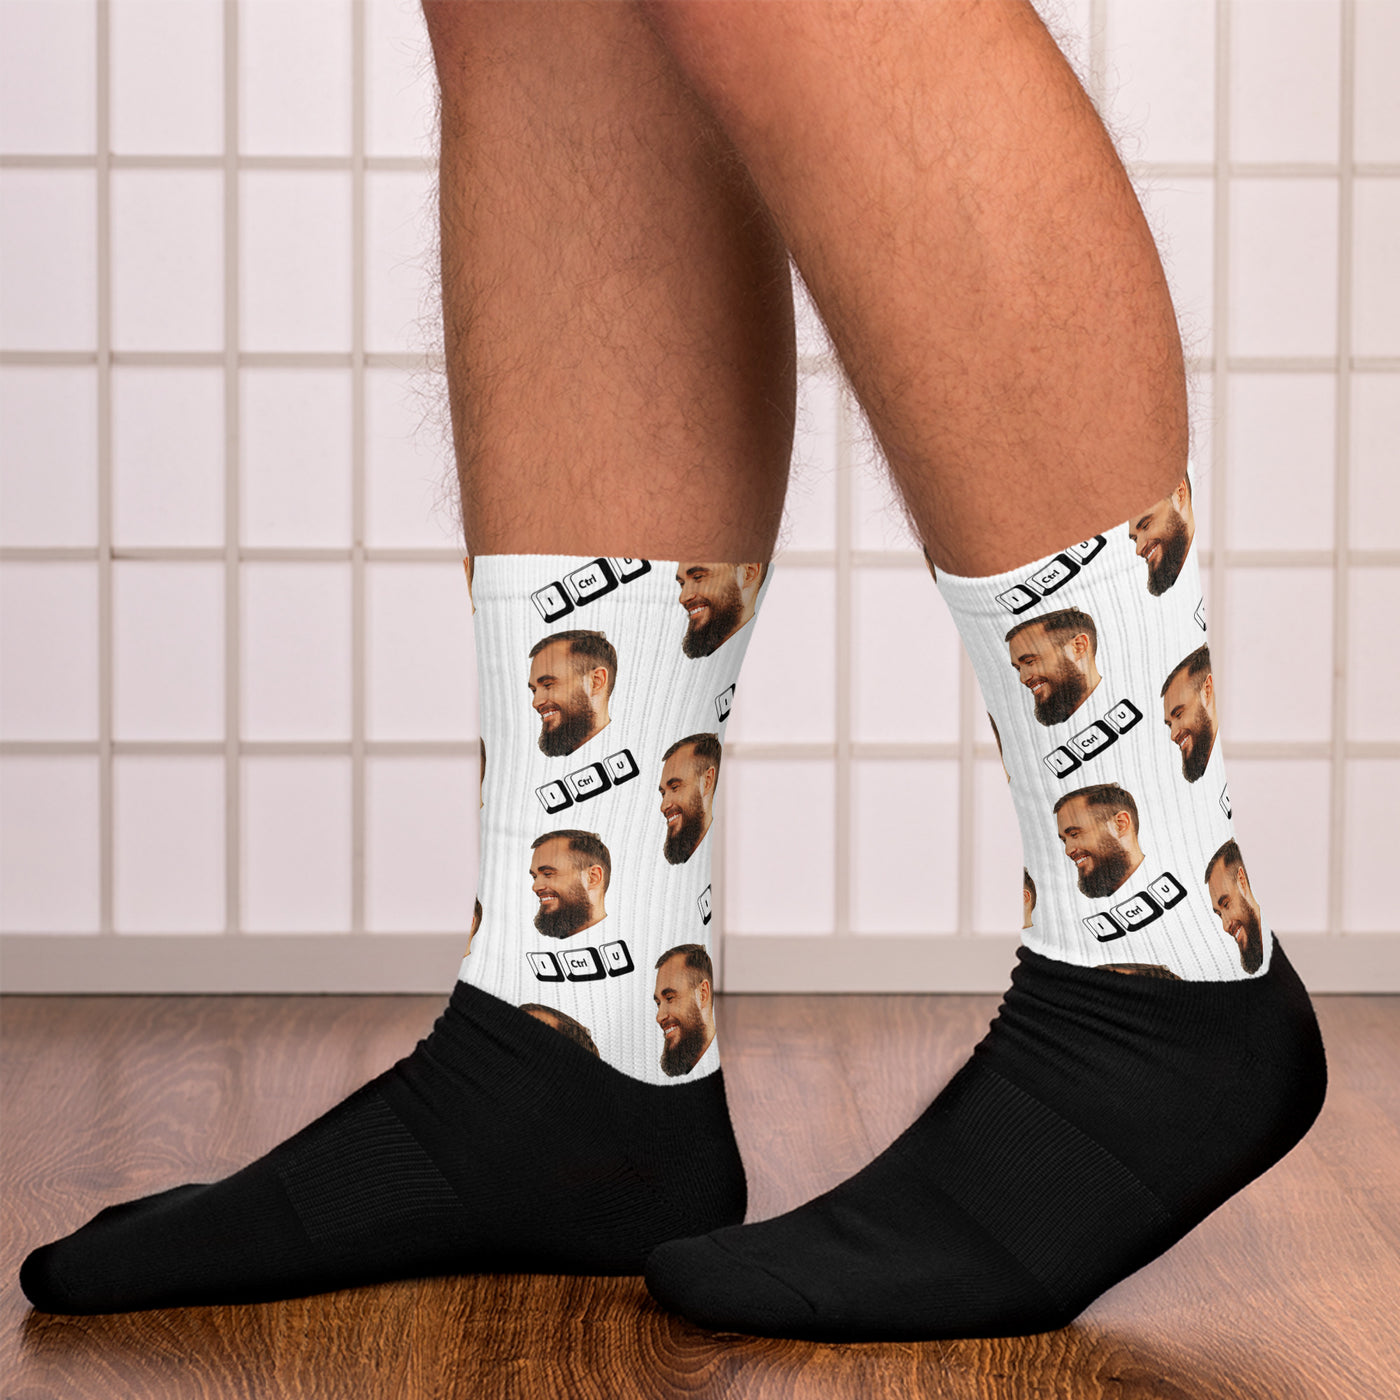 I Ctrl U - Face Mash Socks ( personalized socks with photos )